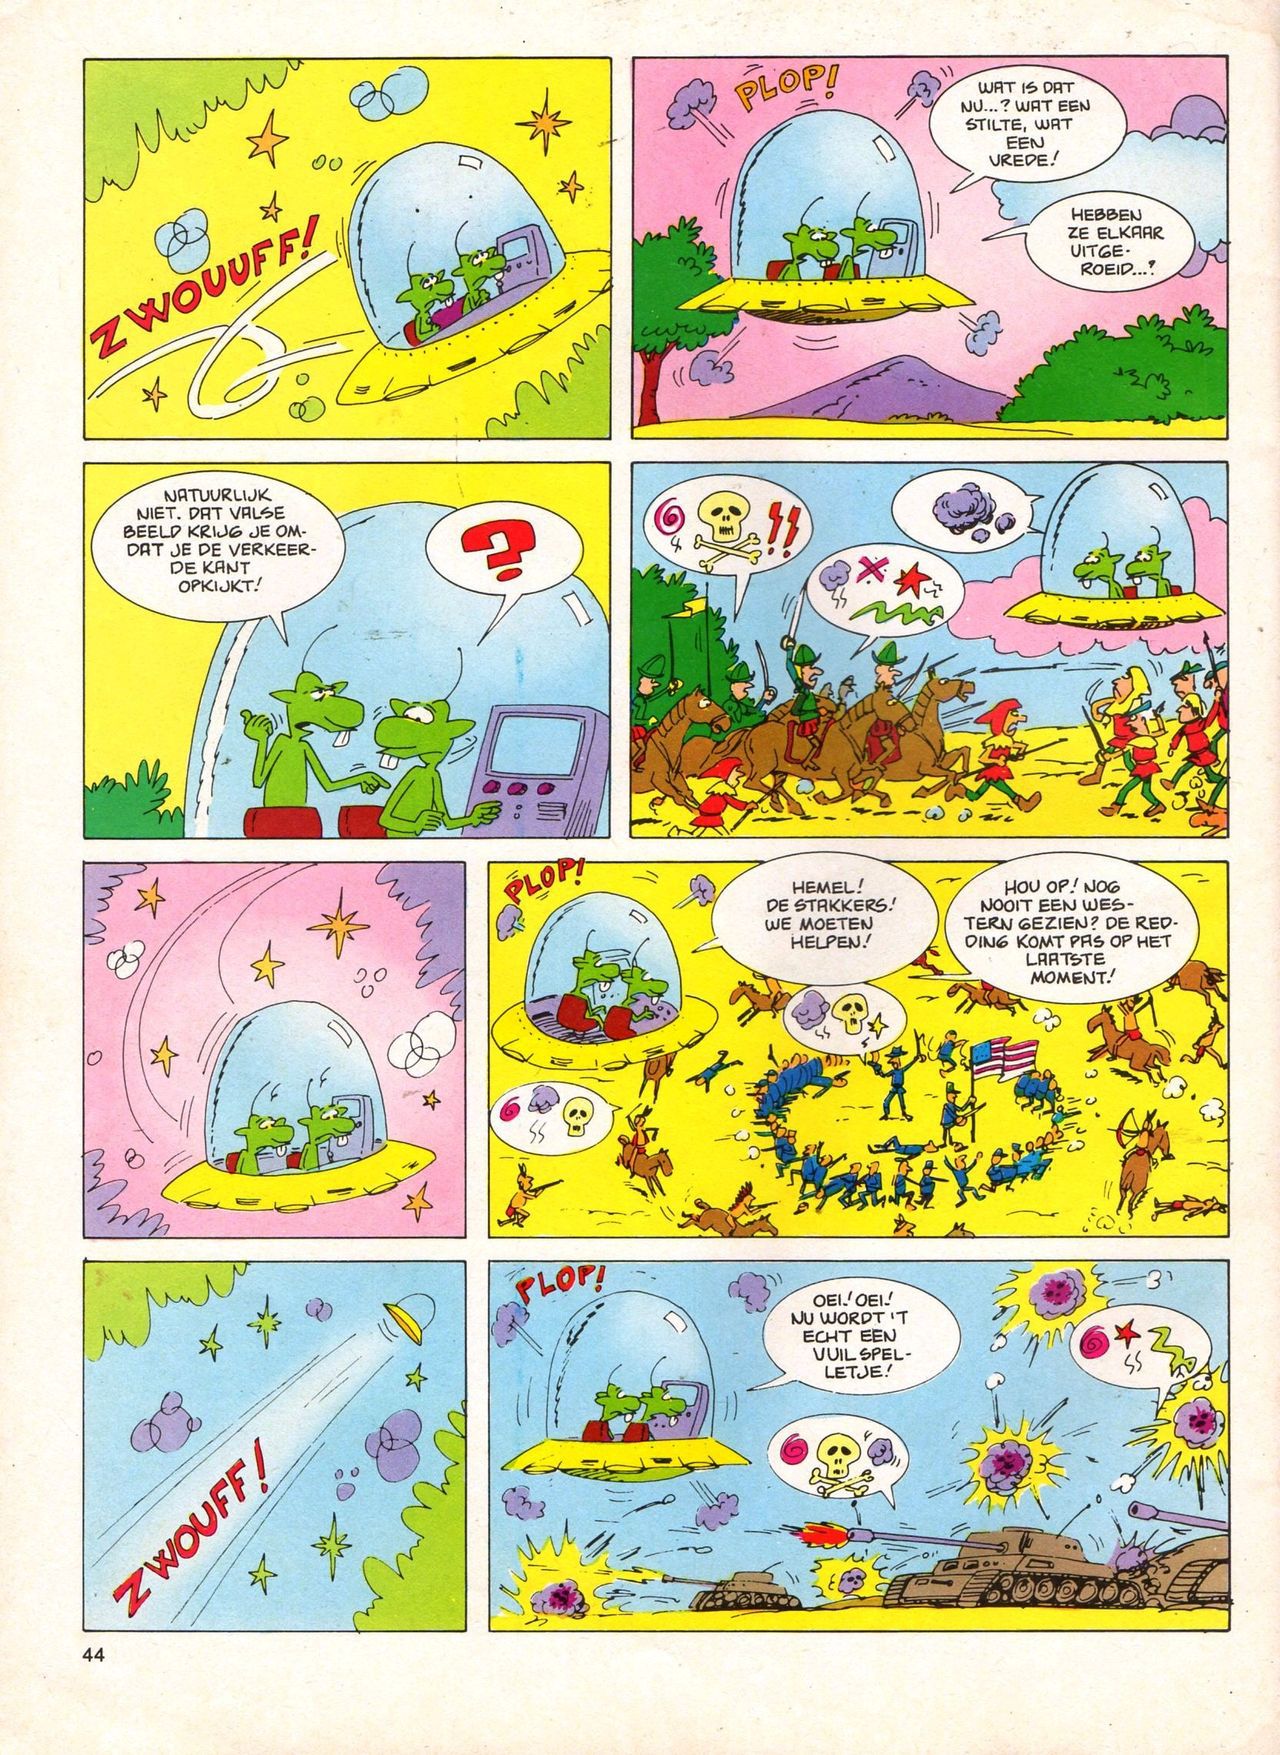 Het Is Groen En Het.. - 04 - Mag Ik Die Ballen.. OH, PARDON! (Dutch) Een oude humoristische serie van Pat Mallet 44